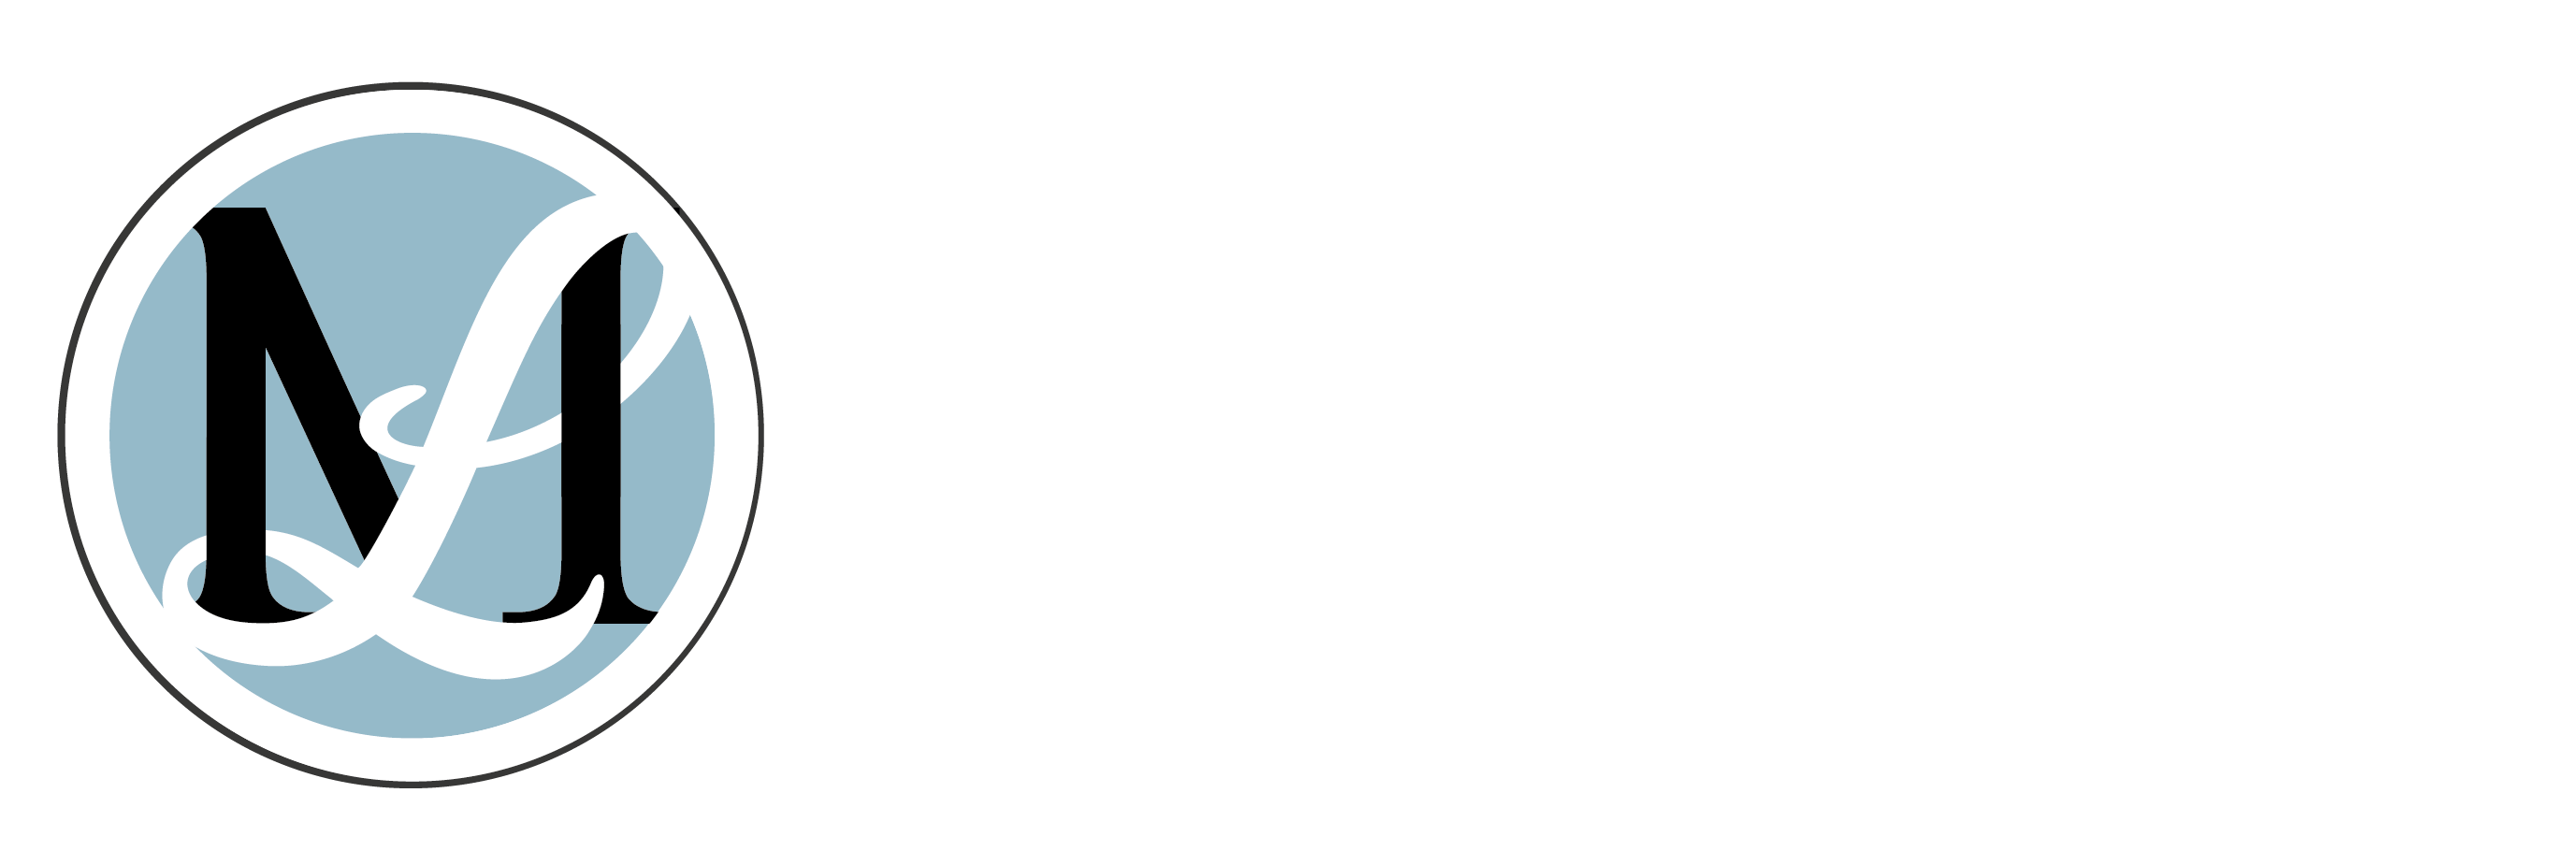 Steuerberatung Lichter & Machon Logo